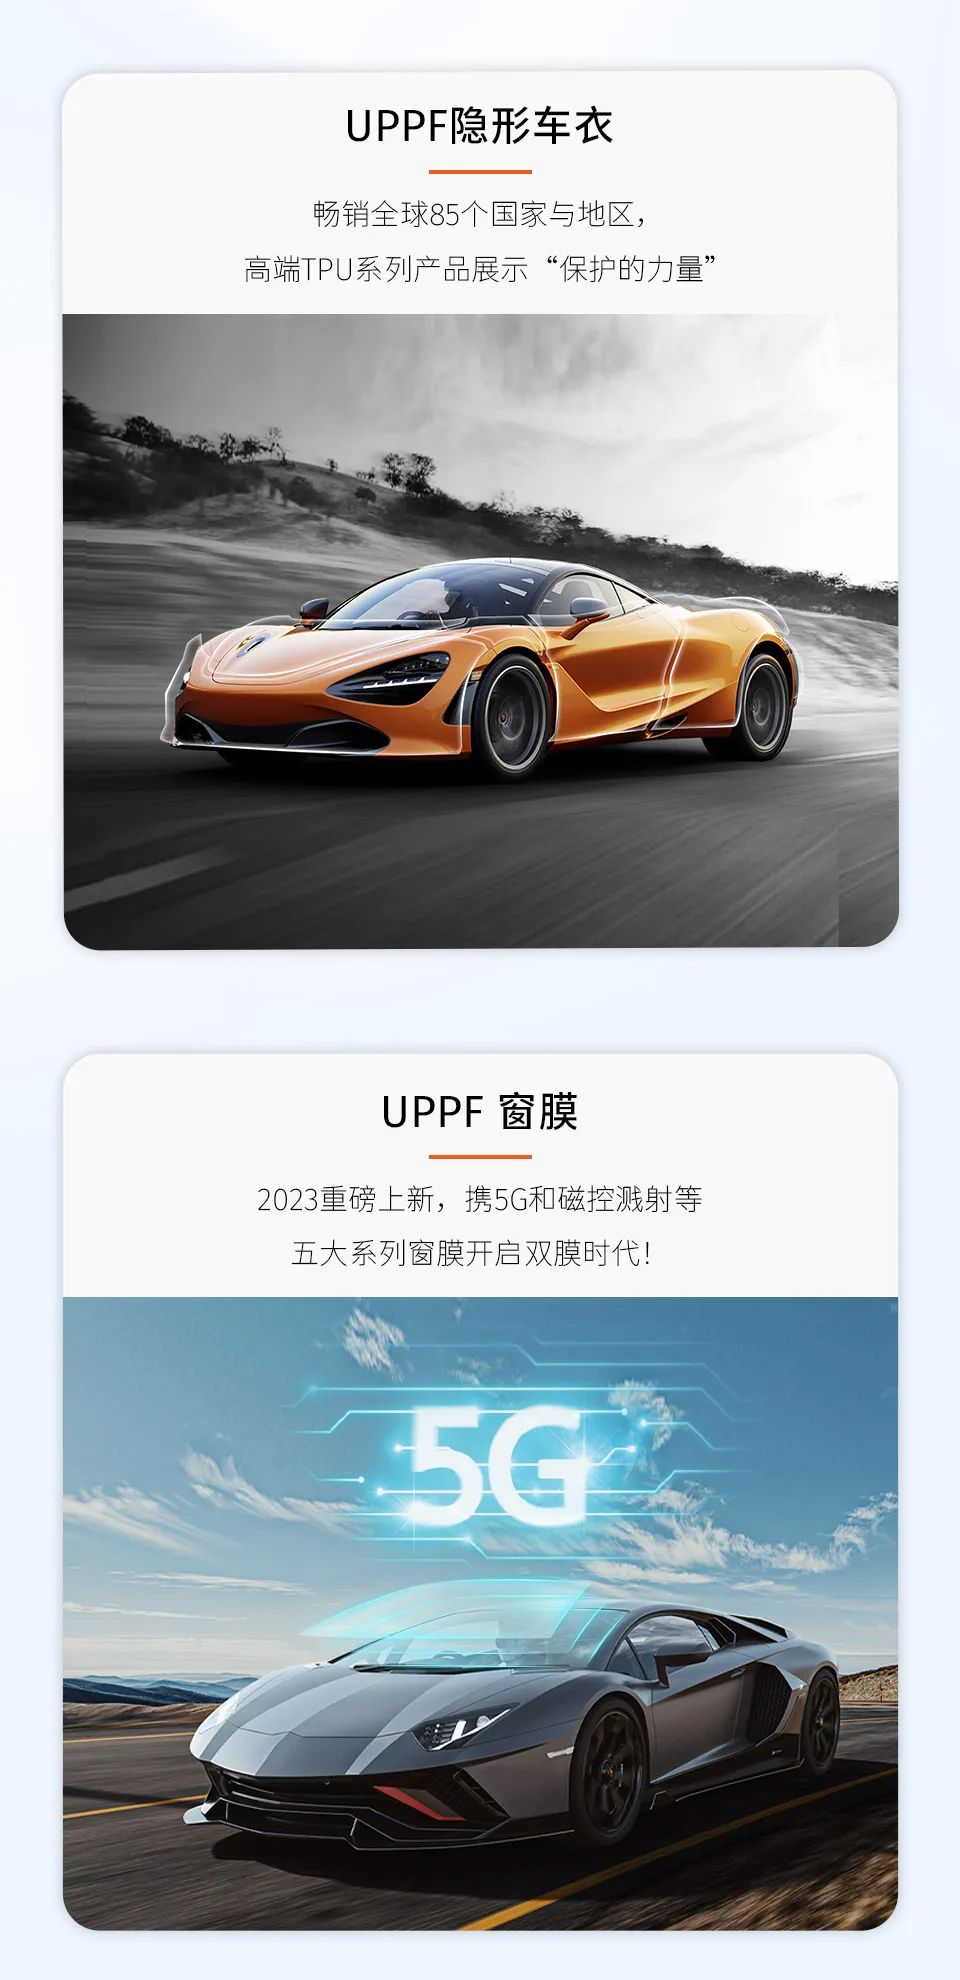 开年盛事 |中威车饰携手UPPF参加2023北京雅森展！